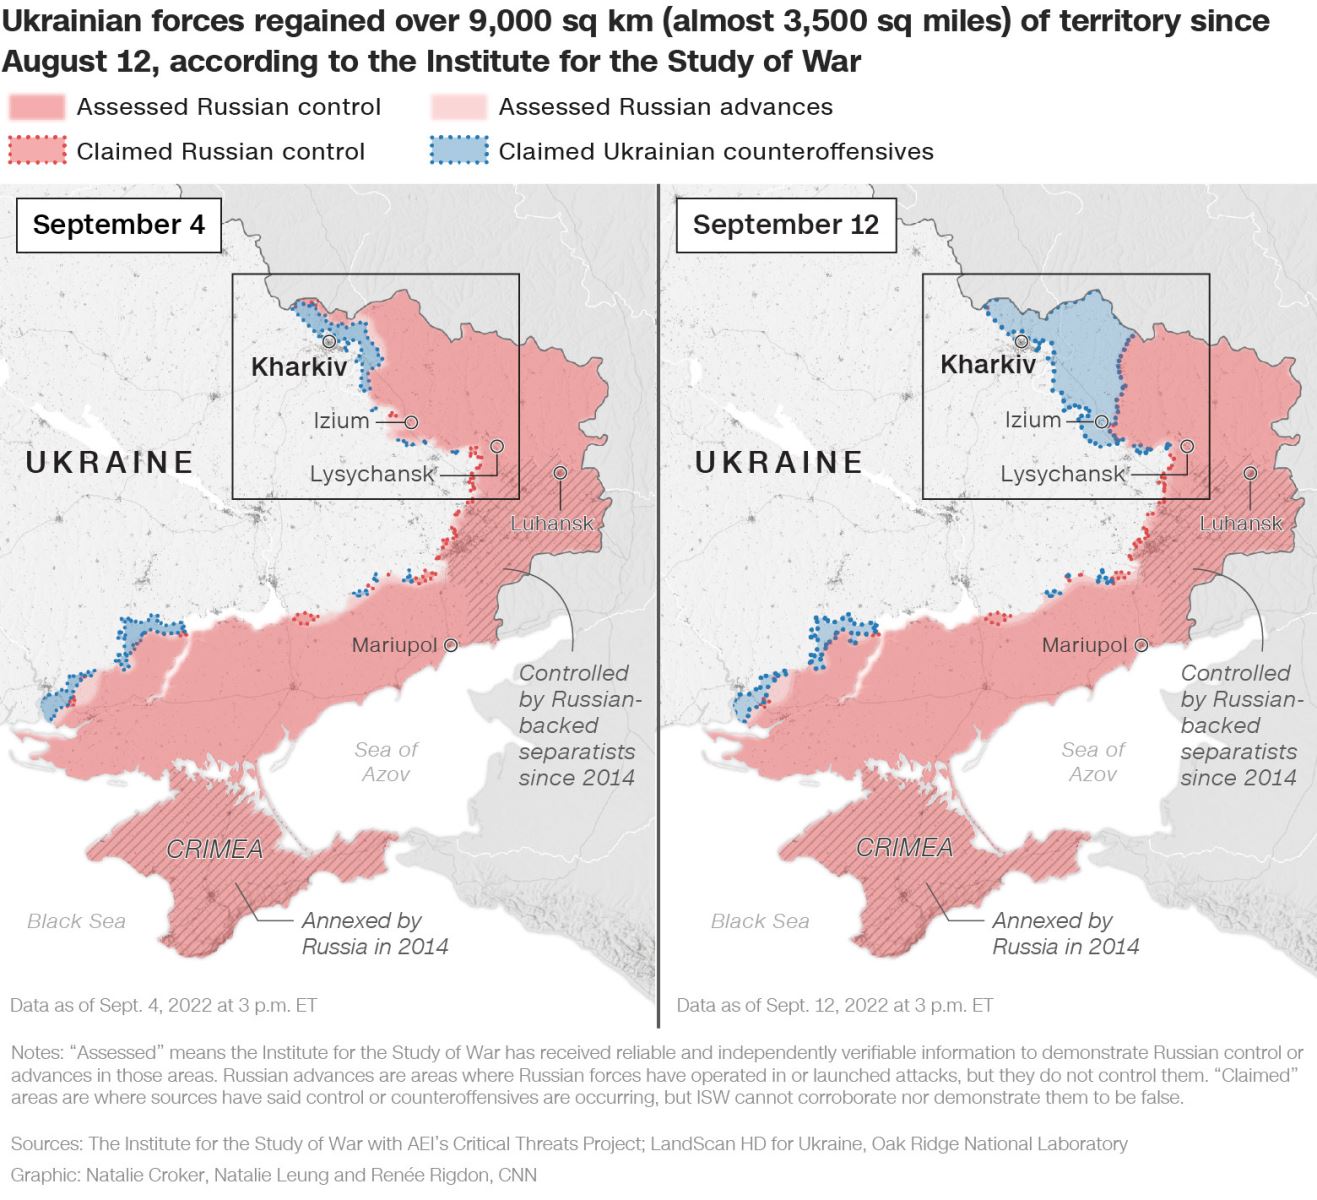 Hãy khám phá bản đồ chiến sự tại Ukraine cập nhật đến năm 2024 để hiểu rõ hơn về tình hình hiện tại và những cải cách quan trọng trong các kế hoạch chiến lược. Đây là cơ hội để học hỏi và đánh giá khả năng tác động của những yếu tố địa lý, chính trị và quân sự trong bối cảnh hiện tại.